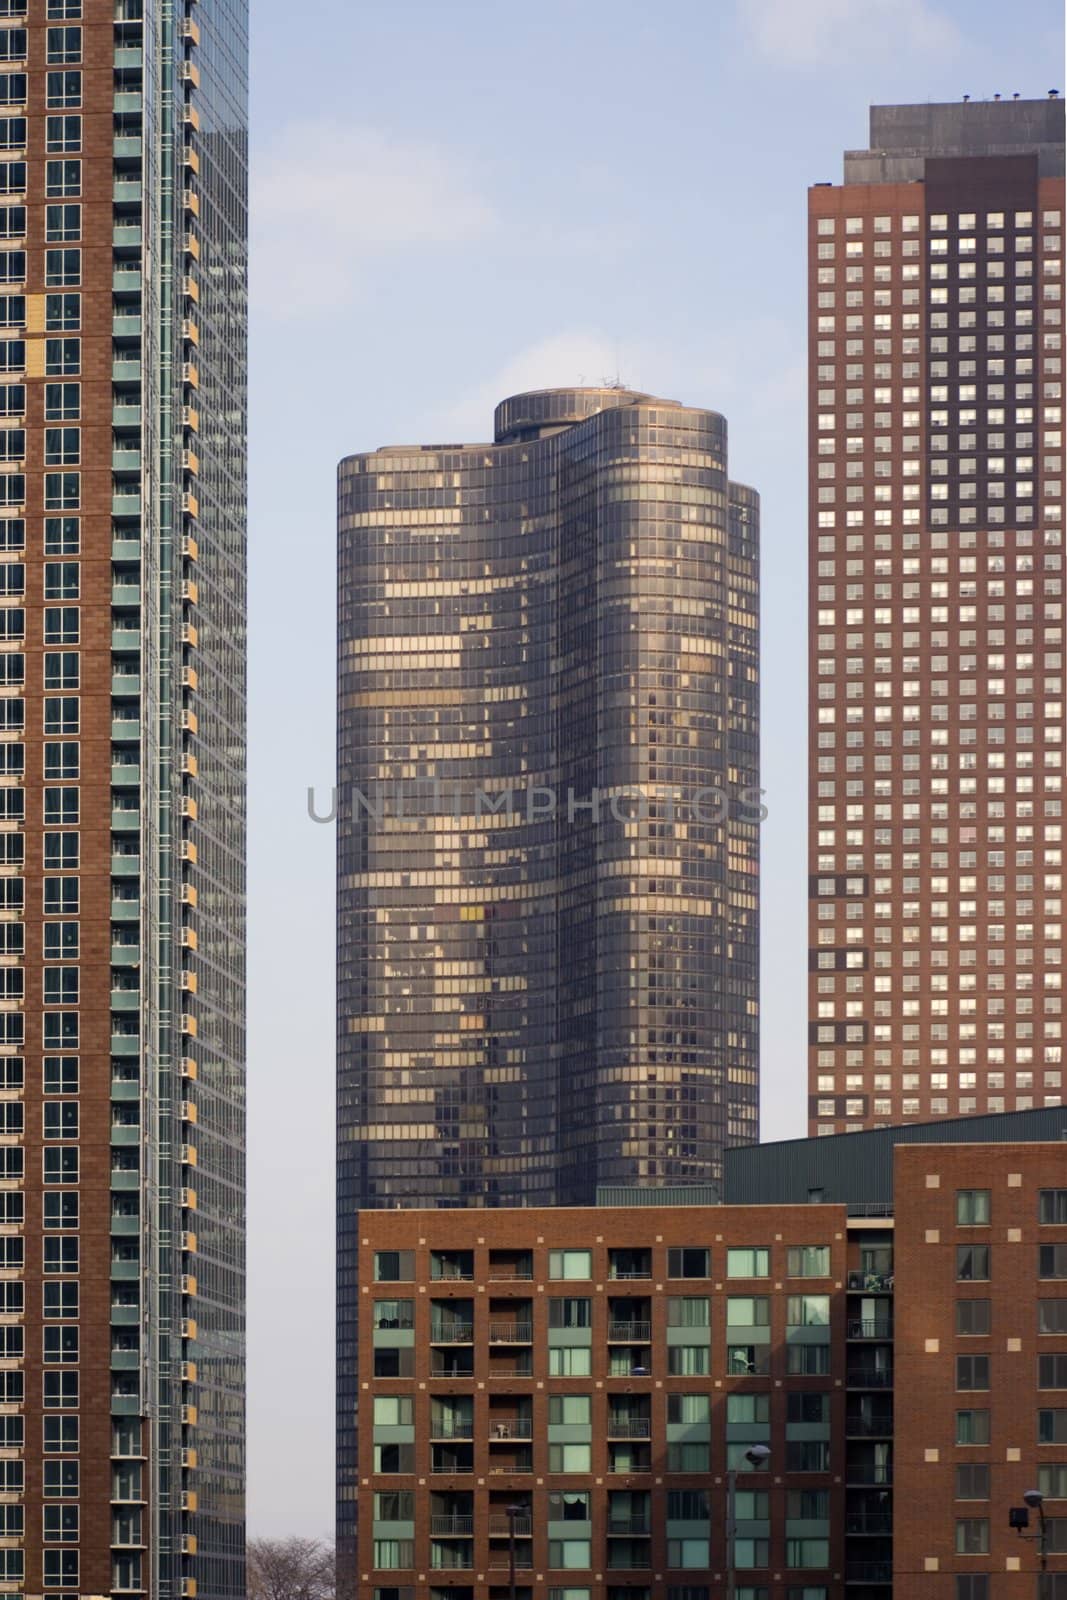 Apartament Buildings in Chicago, Il.